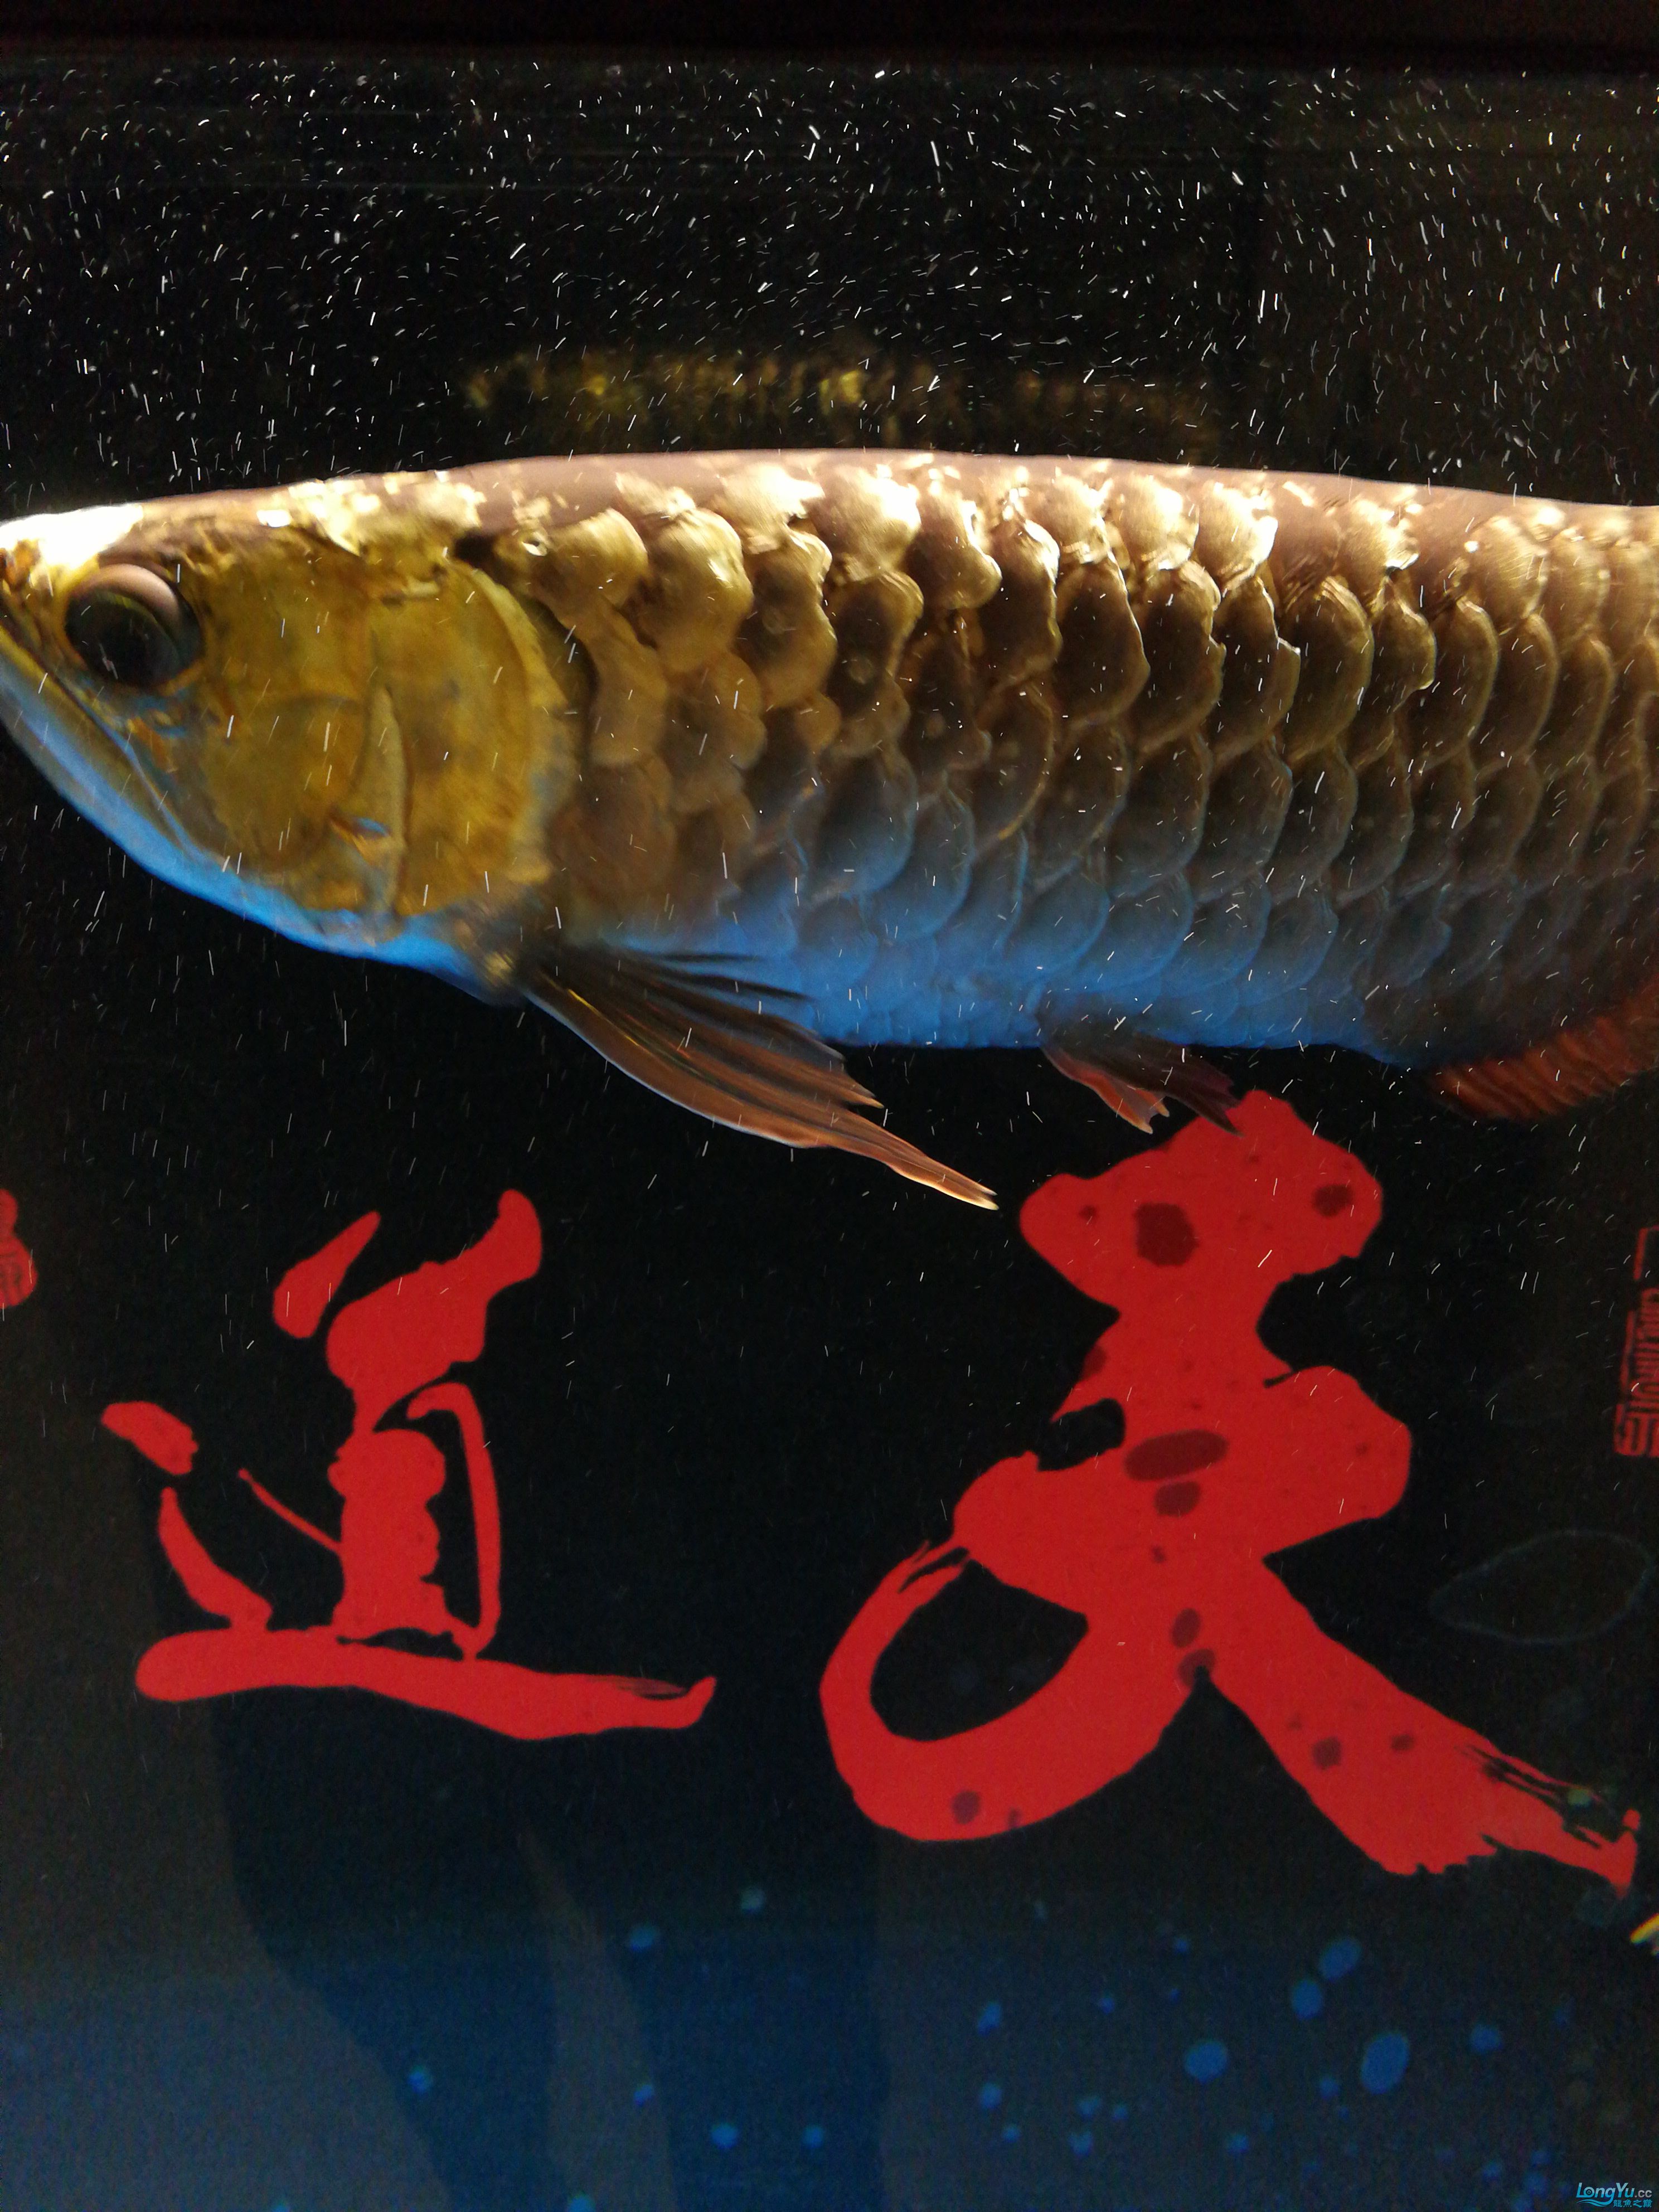 广州鱼缸批发市场求高人指点龙鱼腮盖有小洞 伊巴卡鱼 第3张